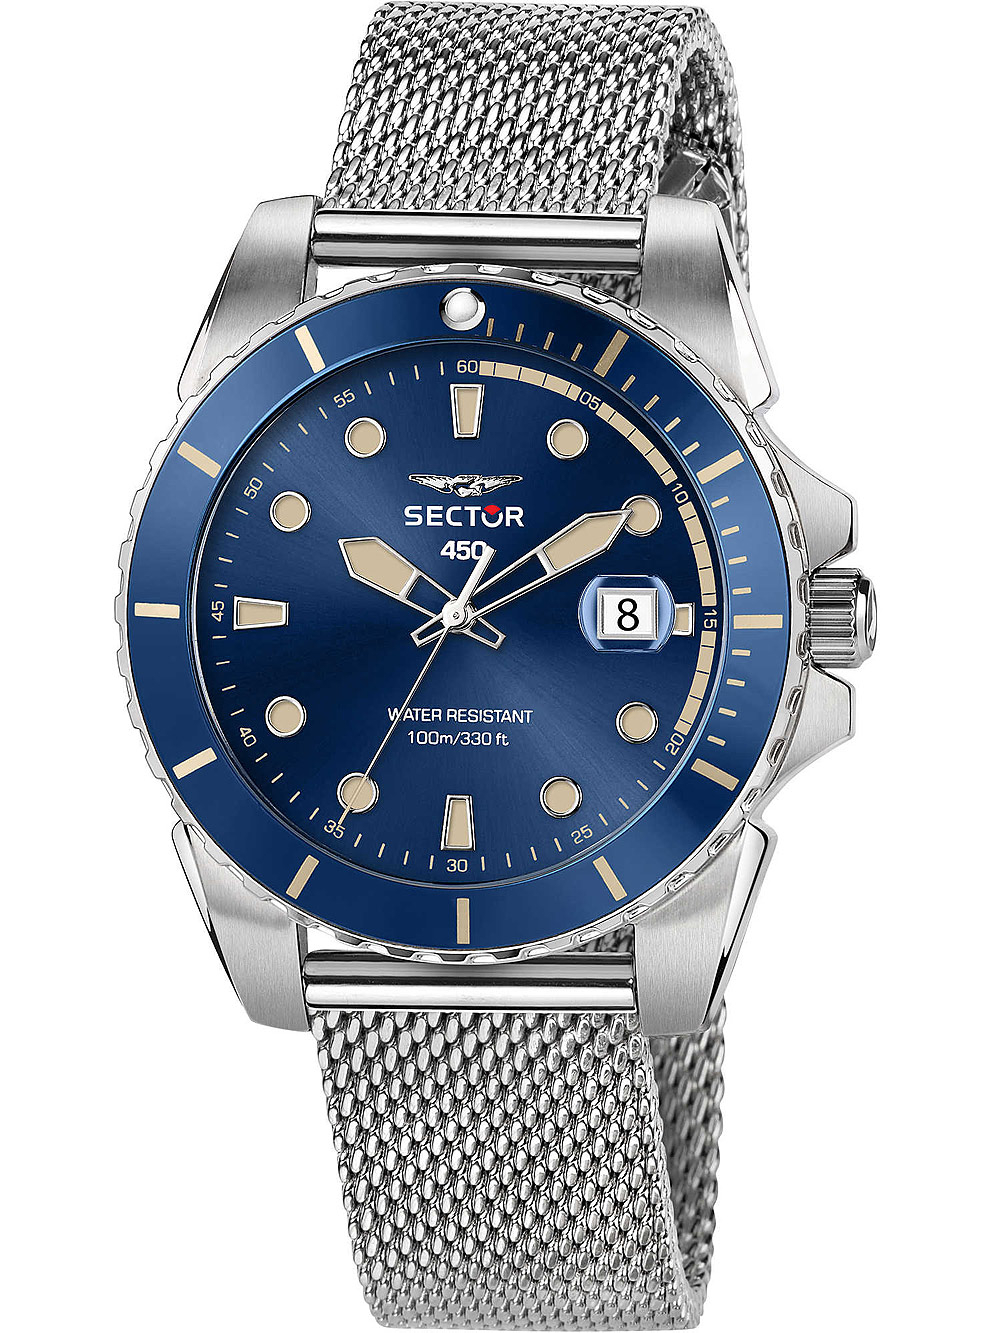 Pánské hodinky Sector R3253276005 Serie 450